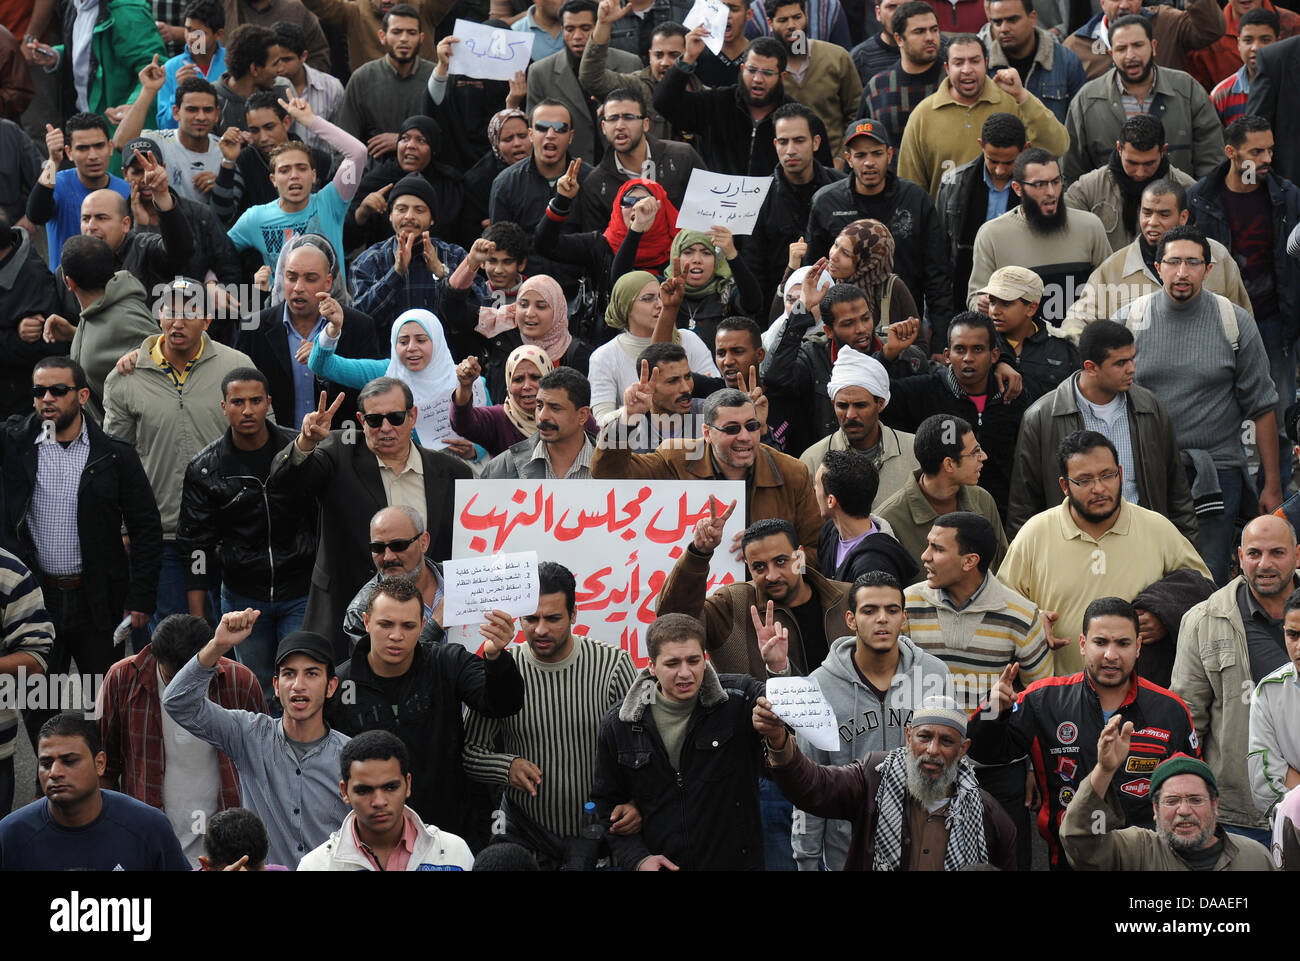 Assemblare i manifestanti al Cairo, Egitto, 29 gennaio 2011. Scontri e saccheggi nella capitale egiziana continua il sabato mattina. Secondo i resoconti dei mass media, decine di morti e molti feriti. Foto: Annibale Foto Stock